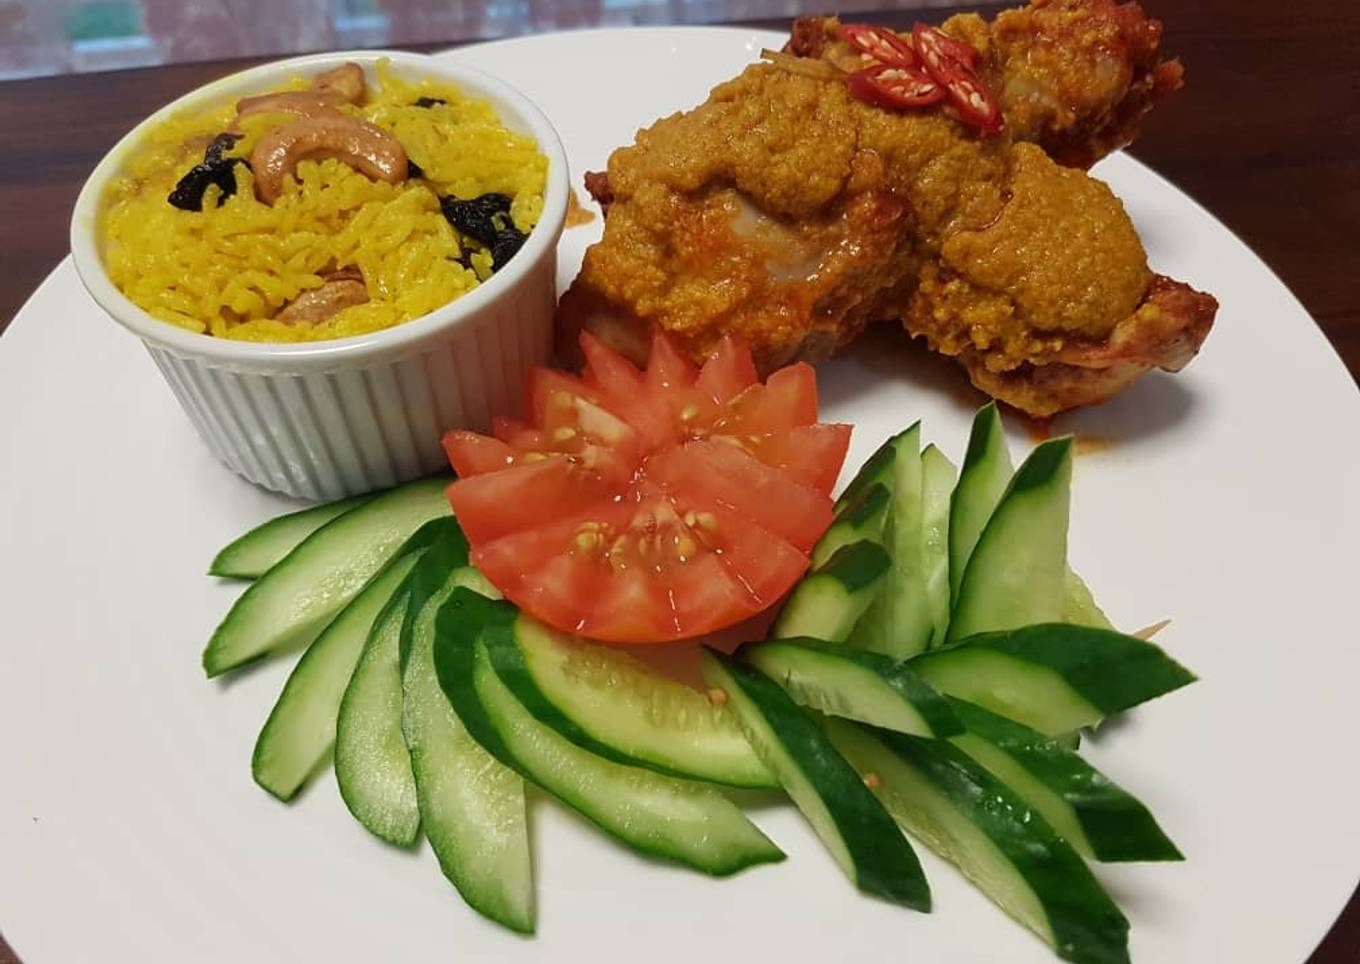 Resepi Nyonya Chicken Rendang with Briyani Rice yang Menggugah Selera dan Mudah